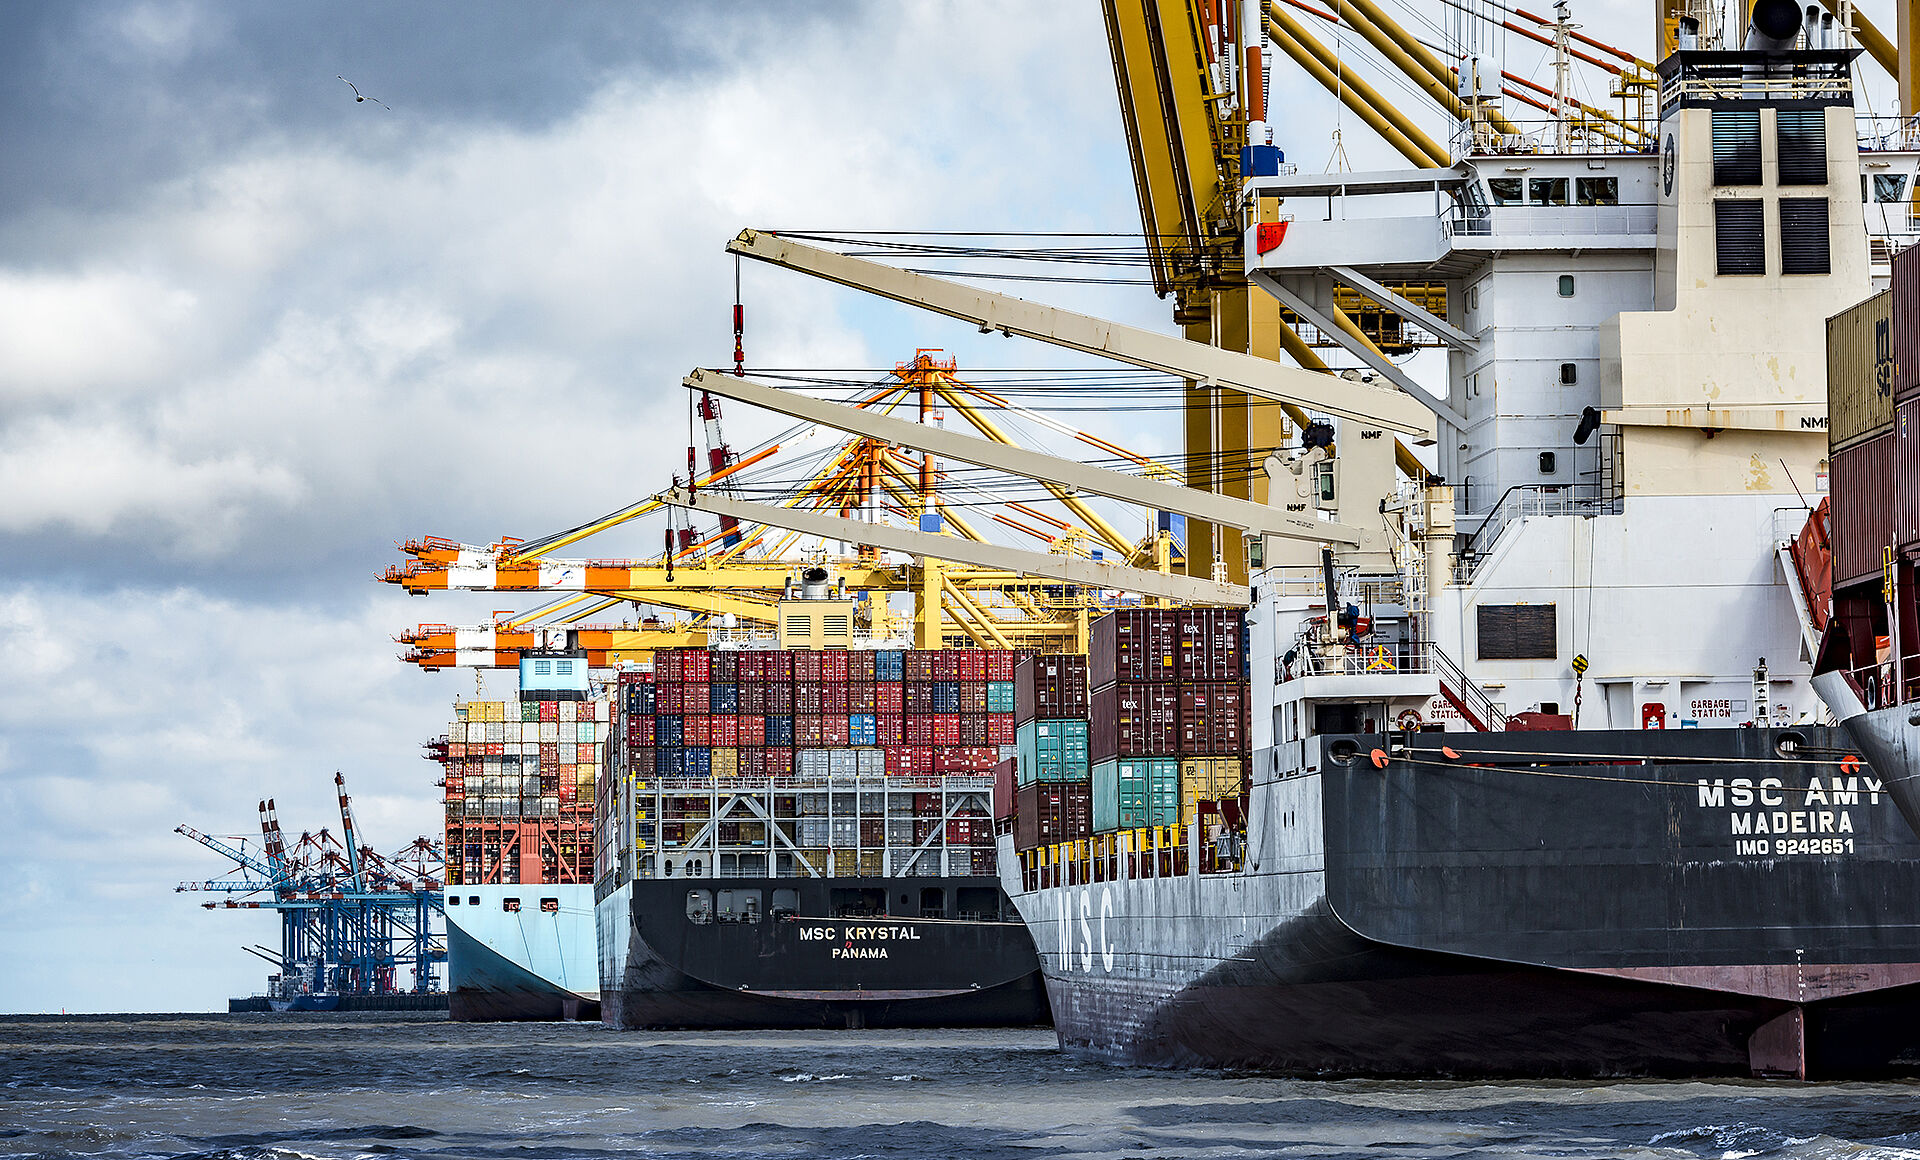 Das Containerterminal Bremerhaven in der rechten Bildhälfte. Kranarme und Containerbrücken überragen 4 Schiffe, die dort liegen. Leichte Bewölkung.